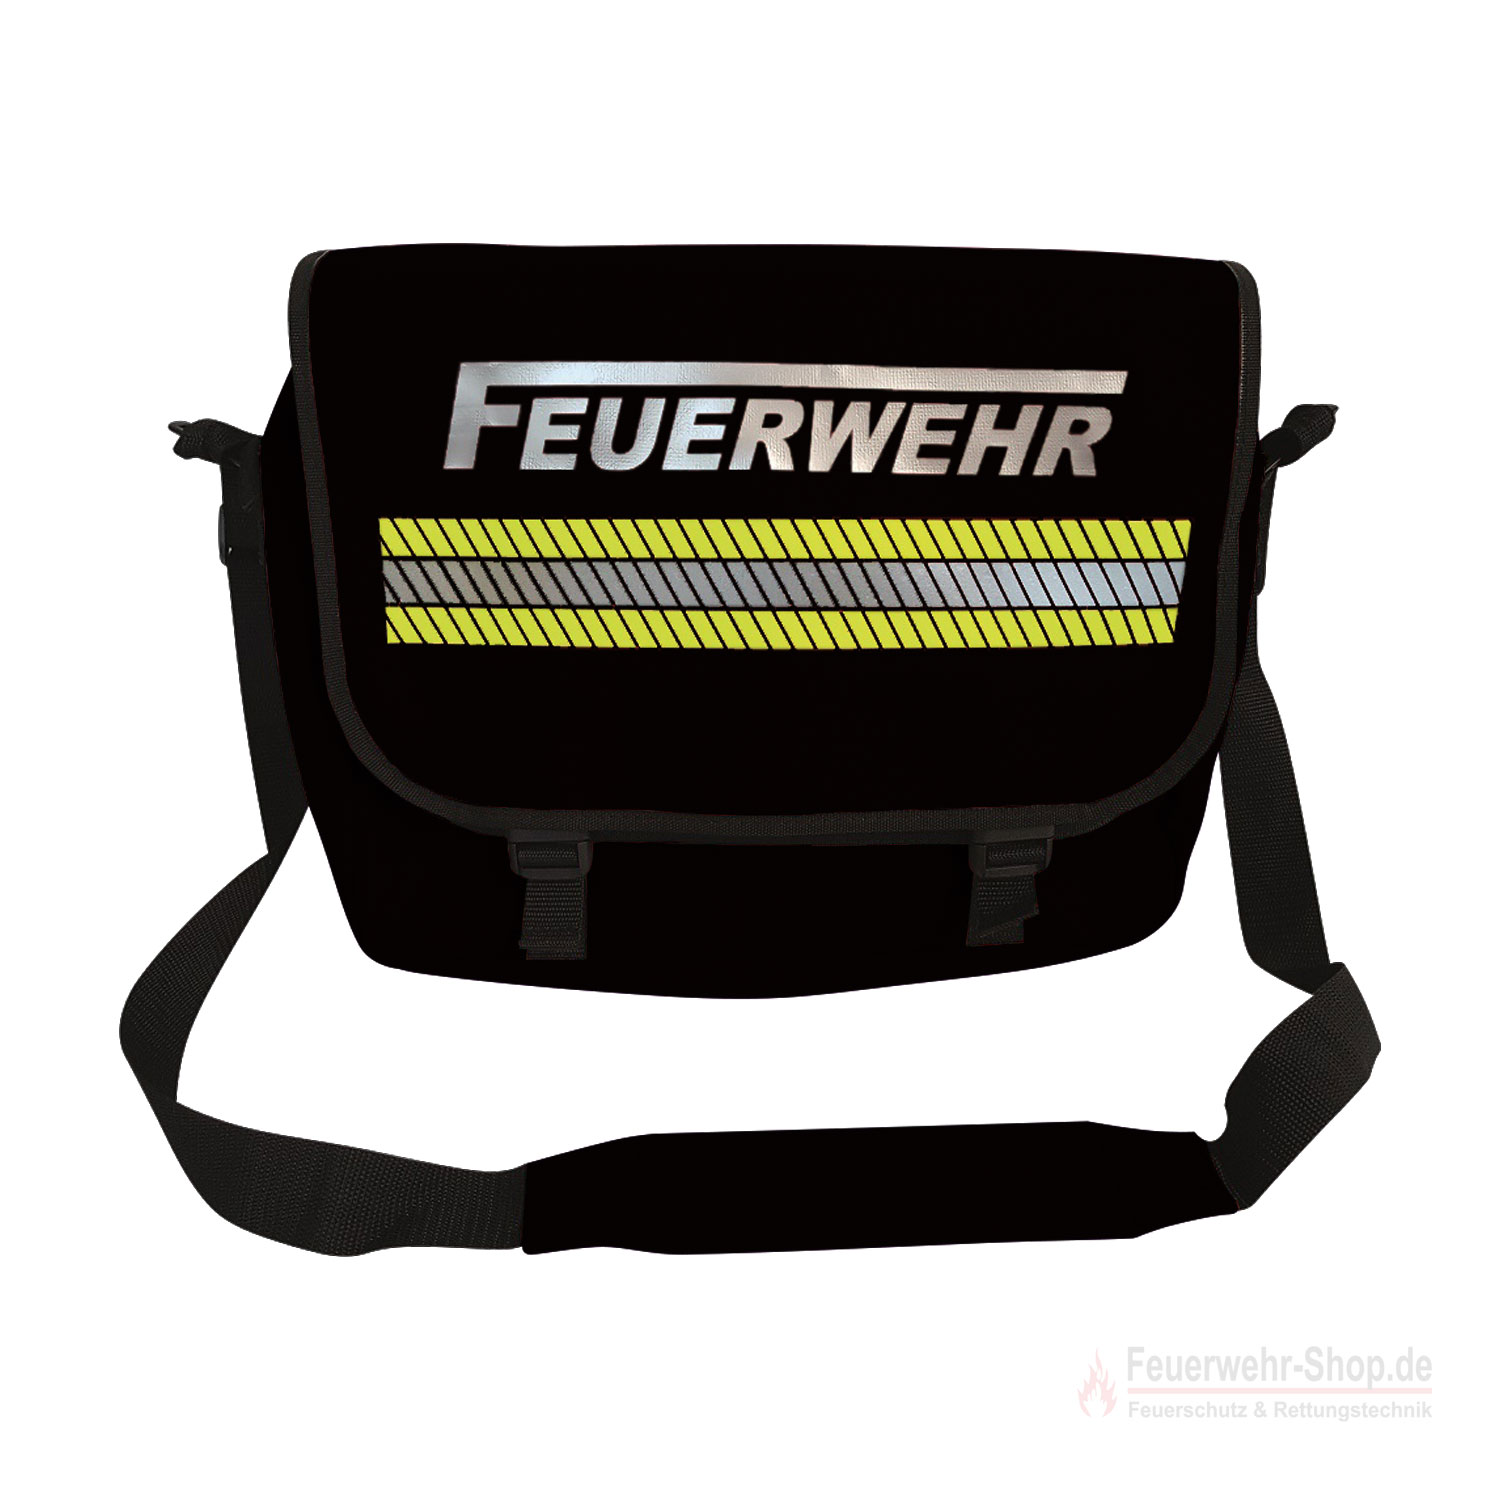 https://www.feuerwehr-shop.de/wp-content/uploads/2019/12/Webbild_Umhaengetasche-Feuerwehr-Tasche-Messenger-Bag_schwarz_1500x1500px.jpg